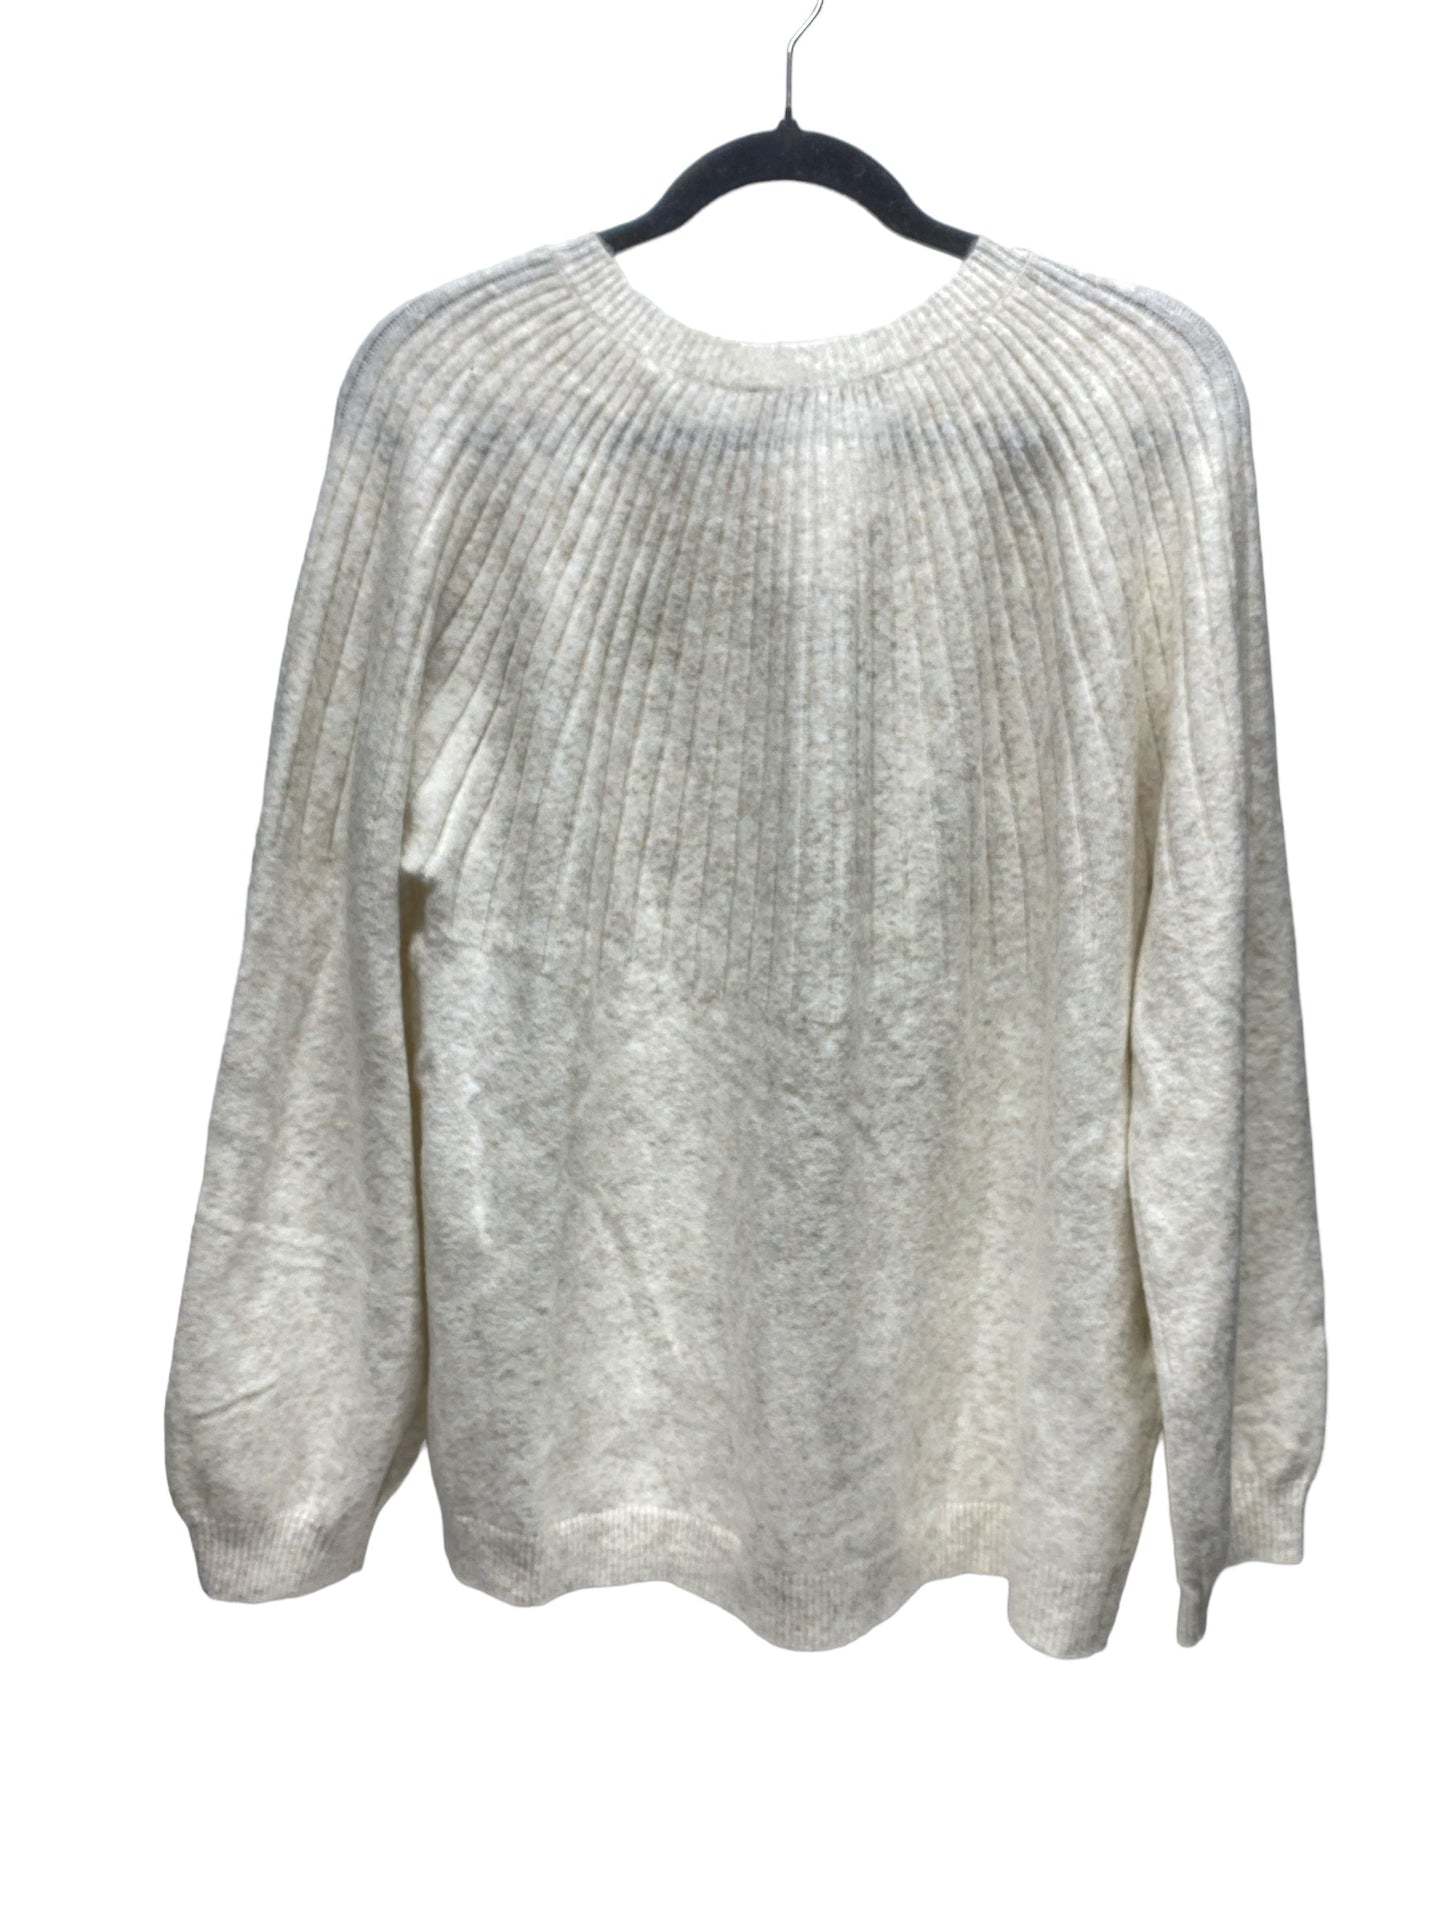 Sweater By Loft  Size: Xl